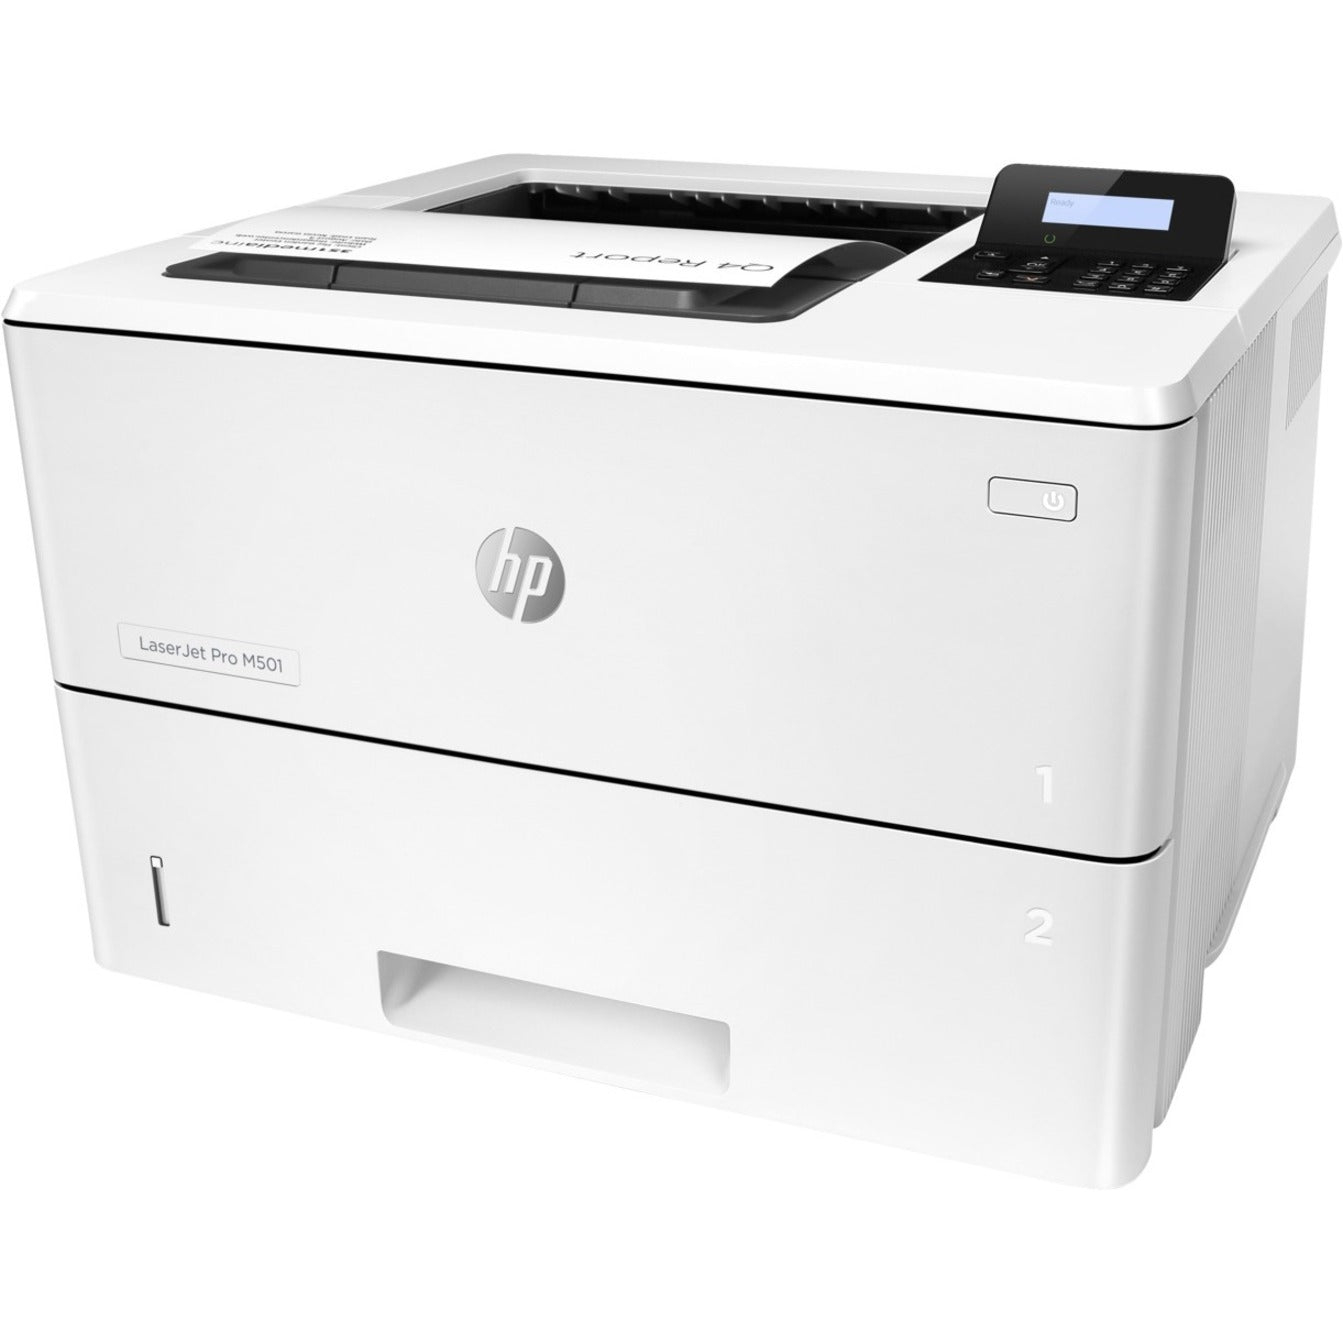 HP LaserJet Pro M501 M501dn Desktop Laser Printer - Monochrome (J8H61A#BGJ)